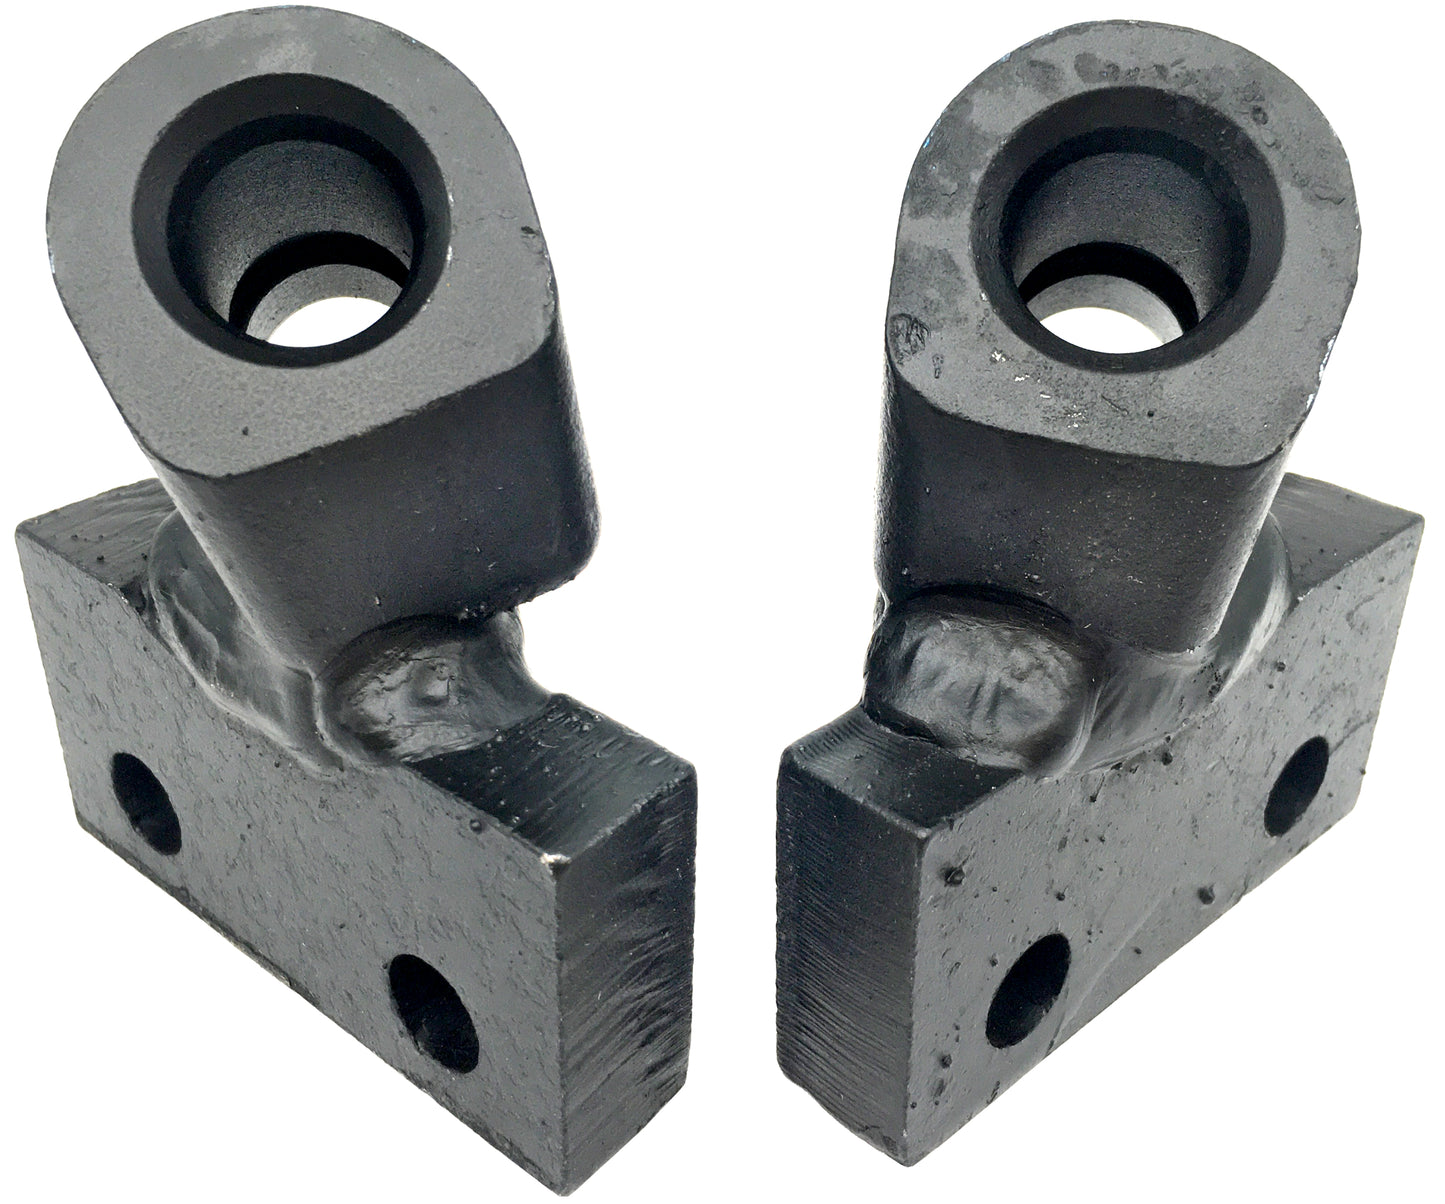 Adaptateurs de tranchée pour chaîne de roche LH &amp; RH - 136040 et 136041 - Pas de 2", coupe de 6", 19 mm État : neuf